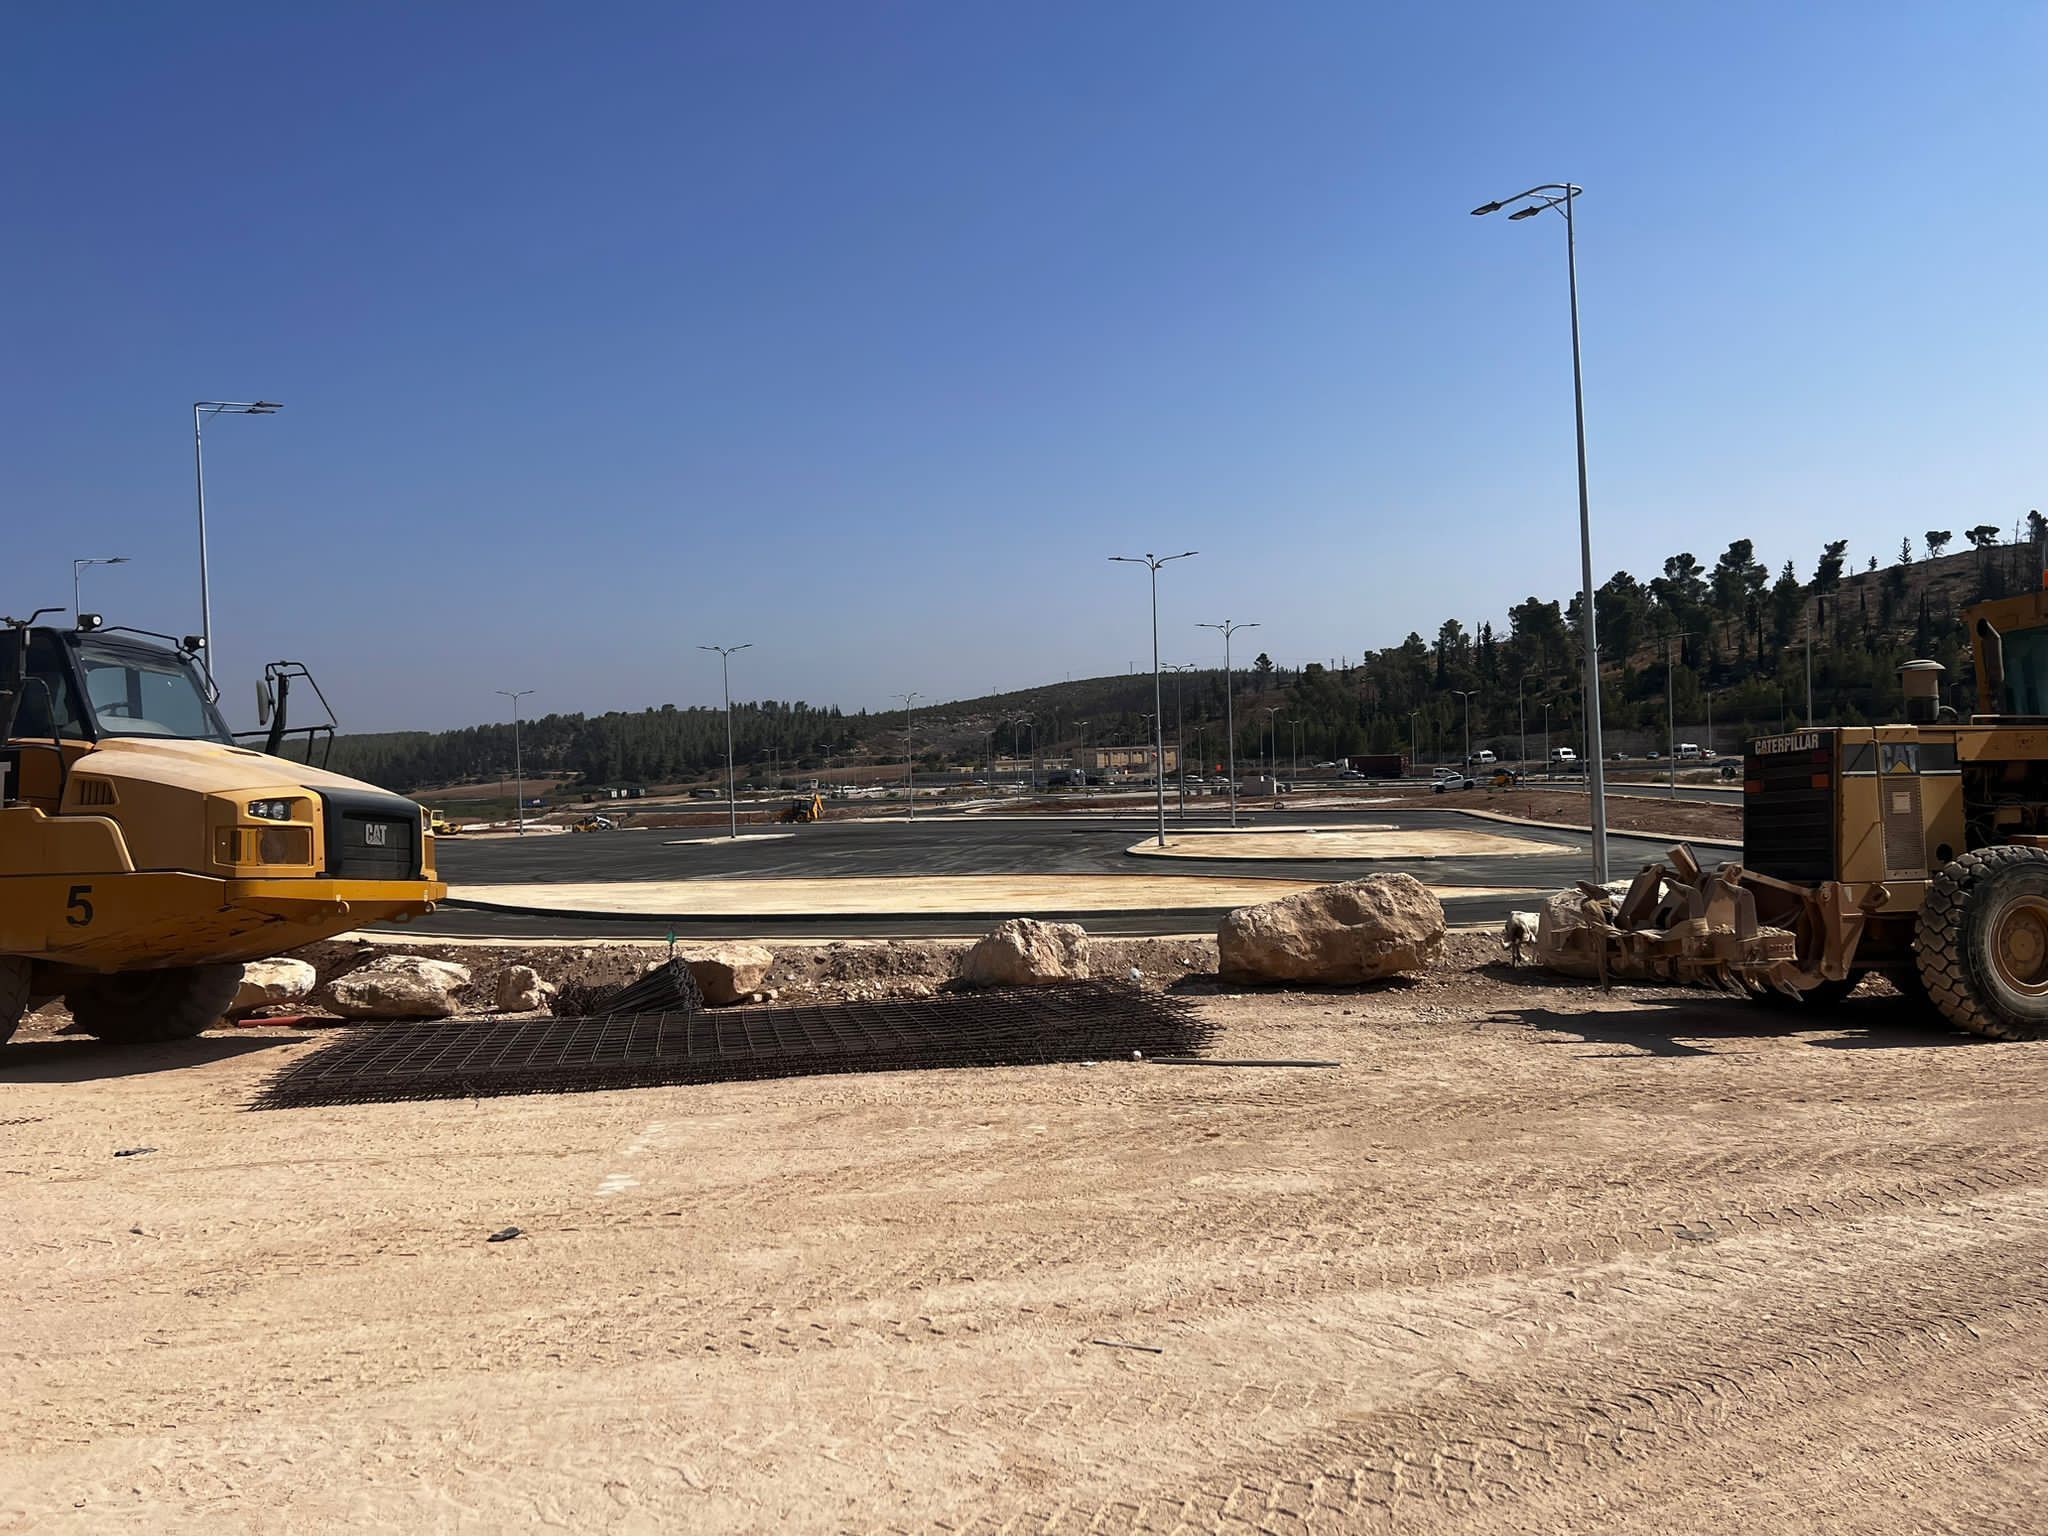 משרד הביטחון וצה״ל החלו בעבודות לשדרוג והרחבת מעבר מזמוריה מדרום לירושלים והמעברים אייל ותרקומיא לאורך קו התפר